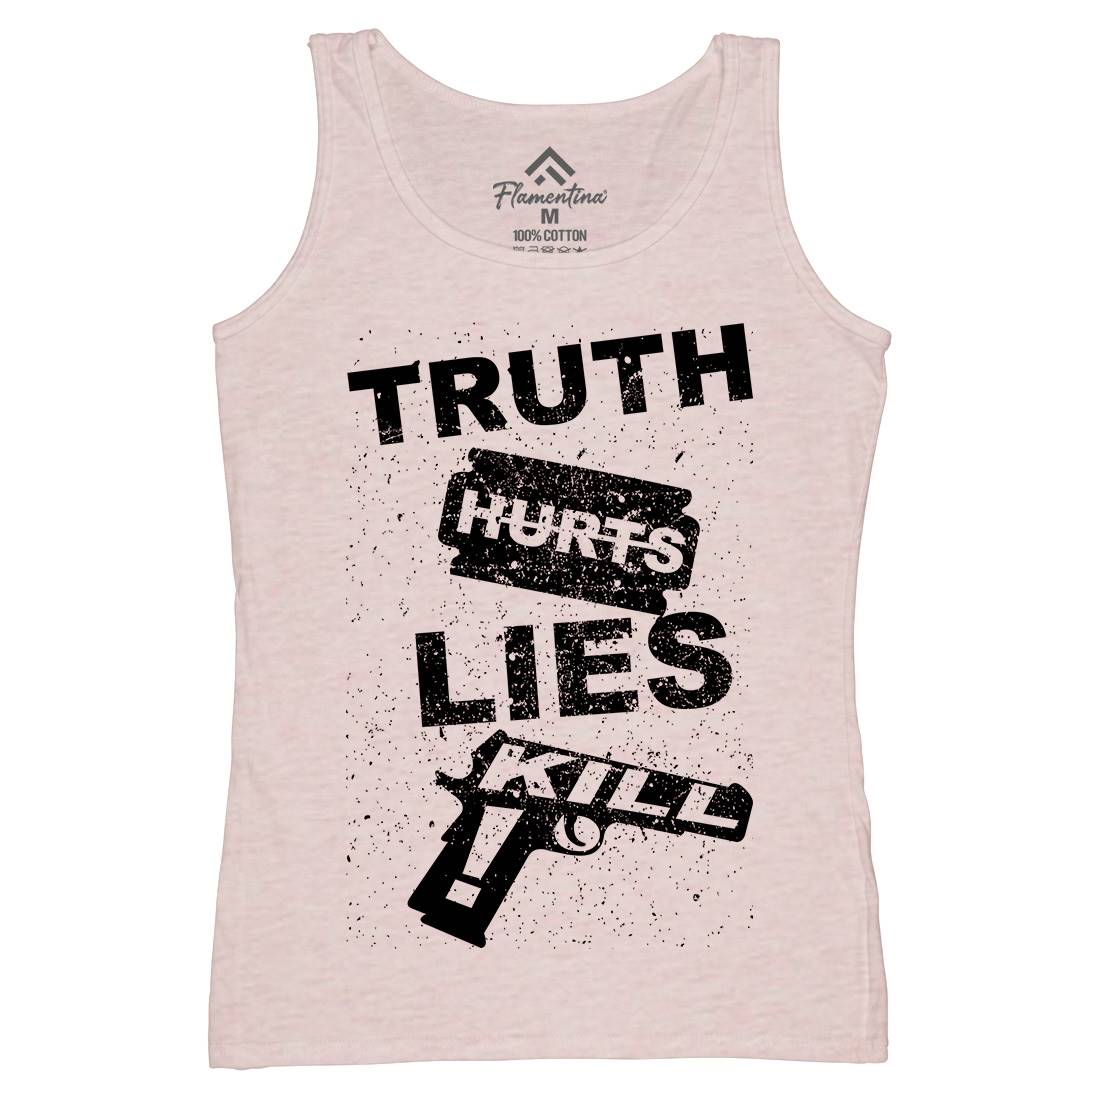 Truth Hurts Womens Organic Tank Top Vest Peace B091